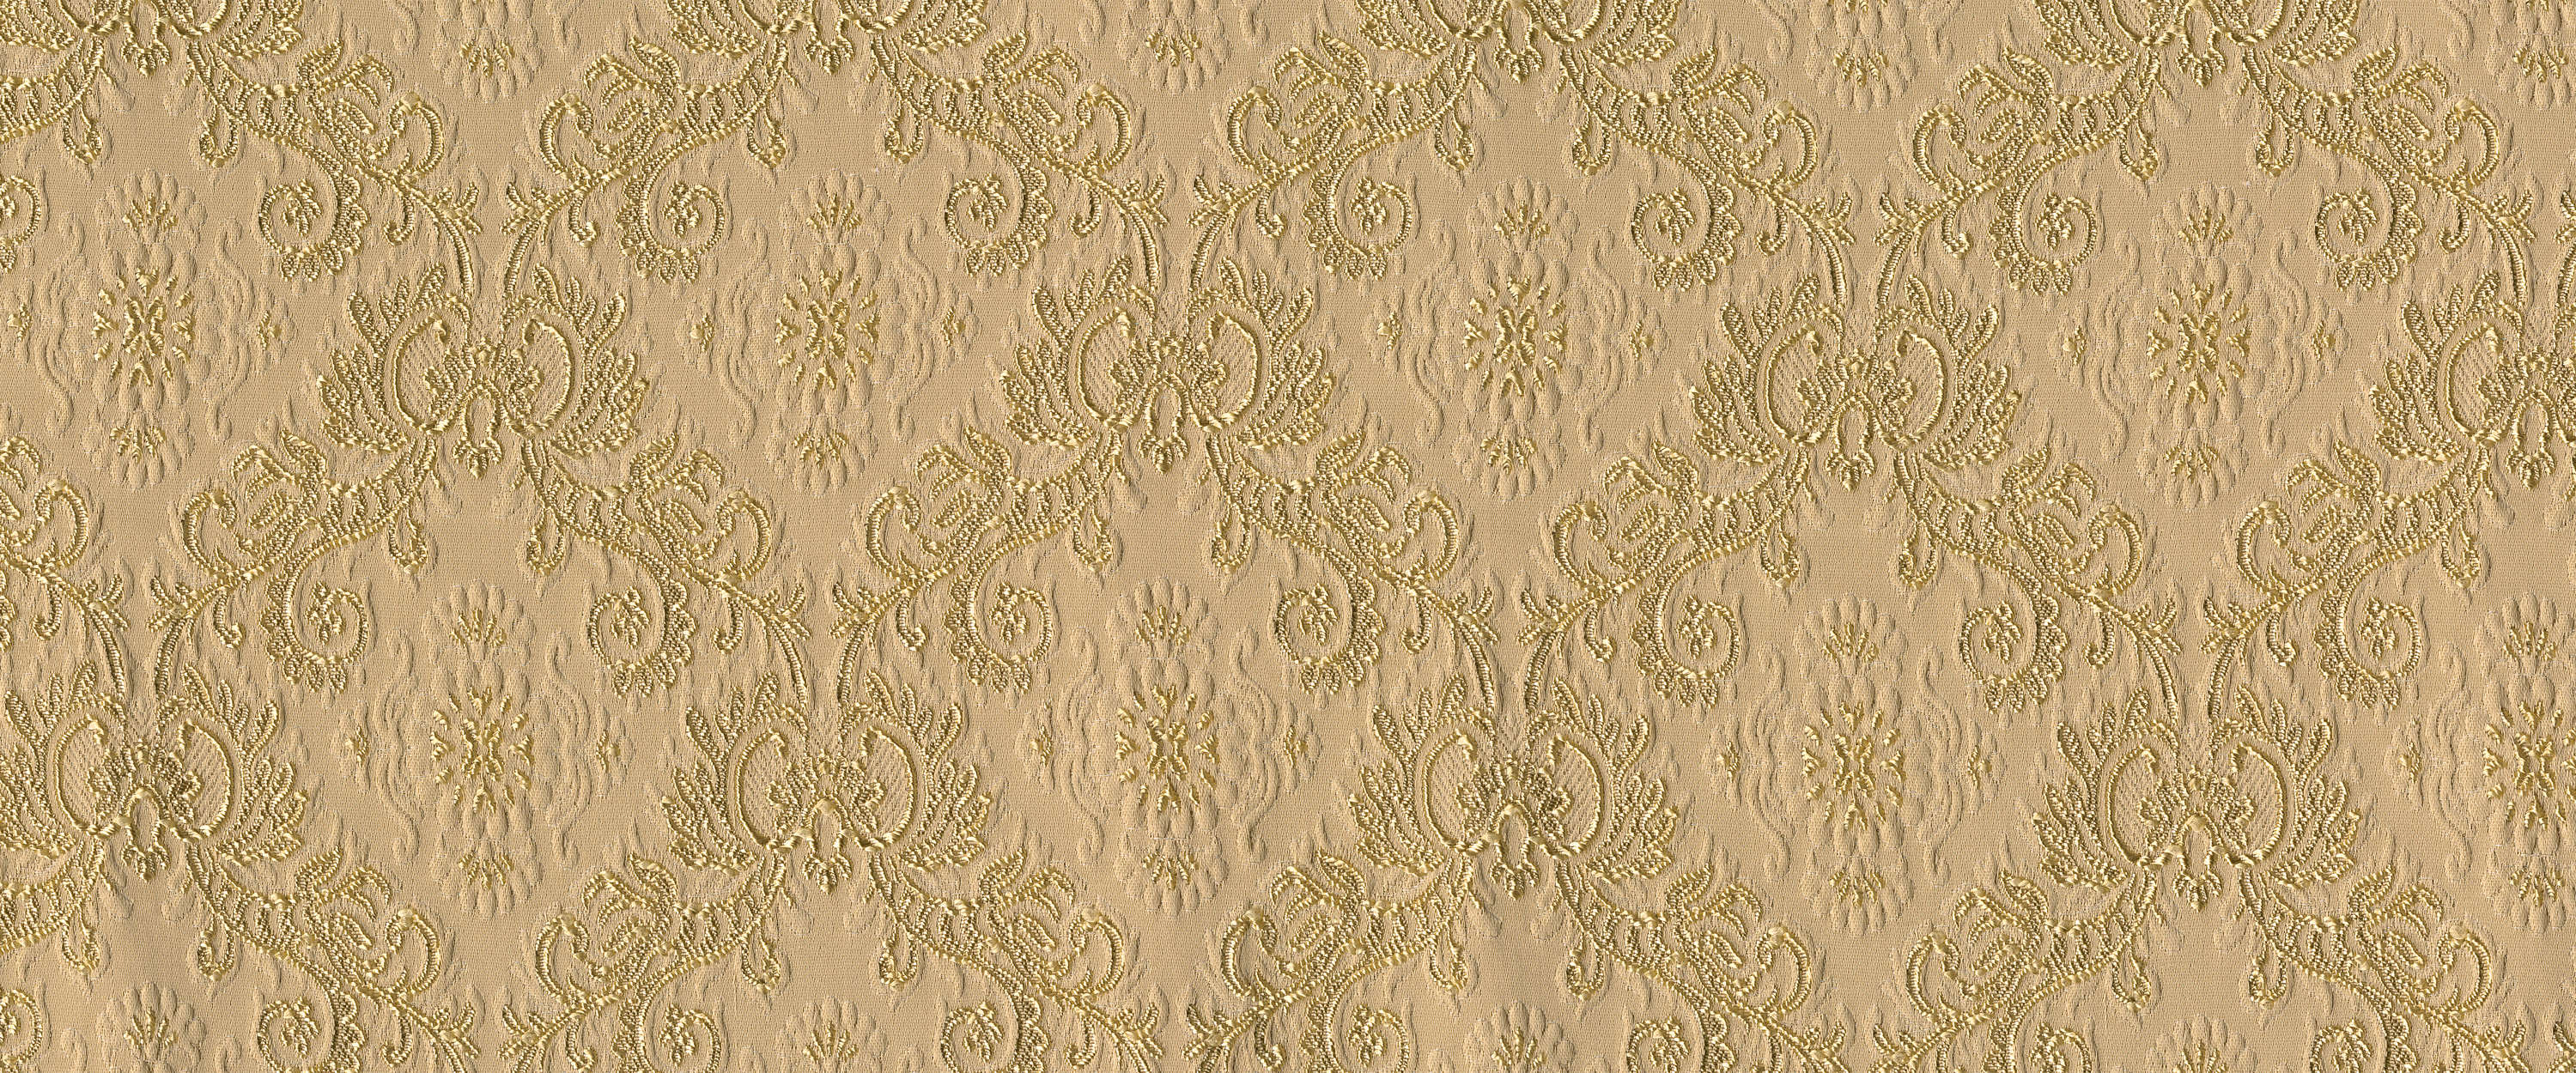             Papier peint panoramique avec ornements dorés classiques
        